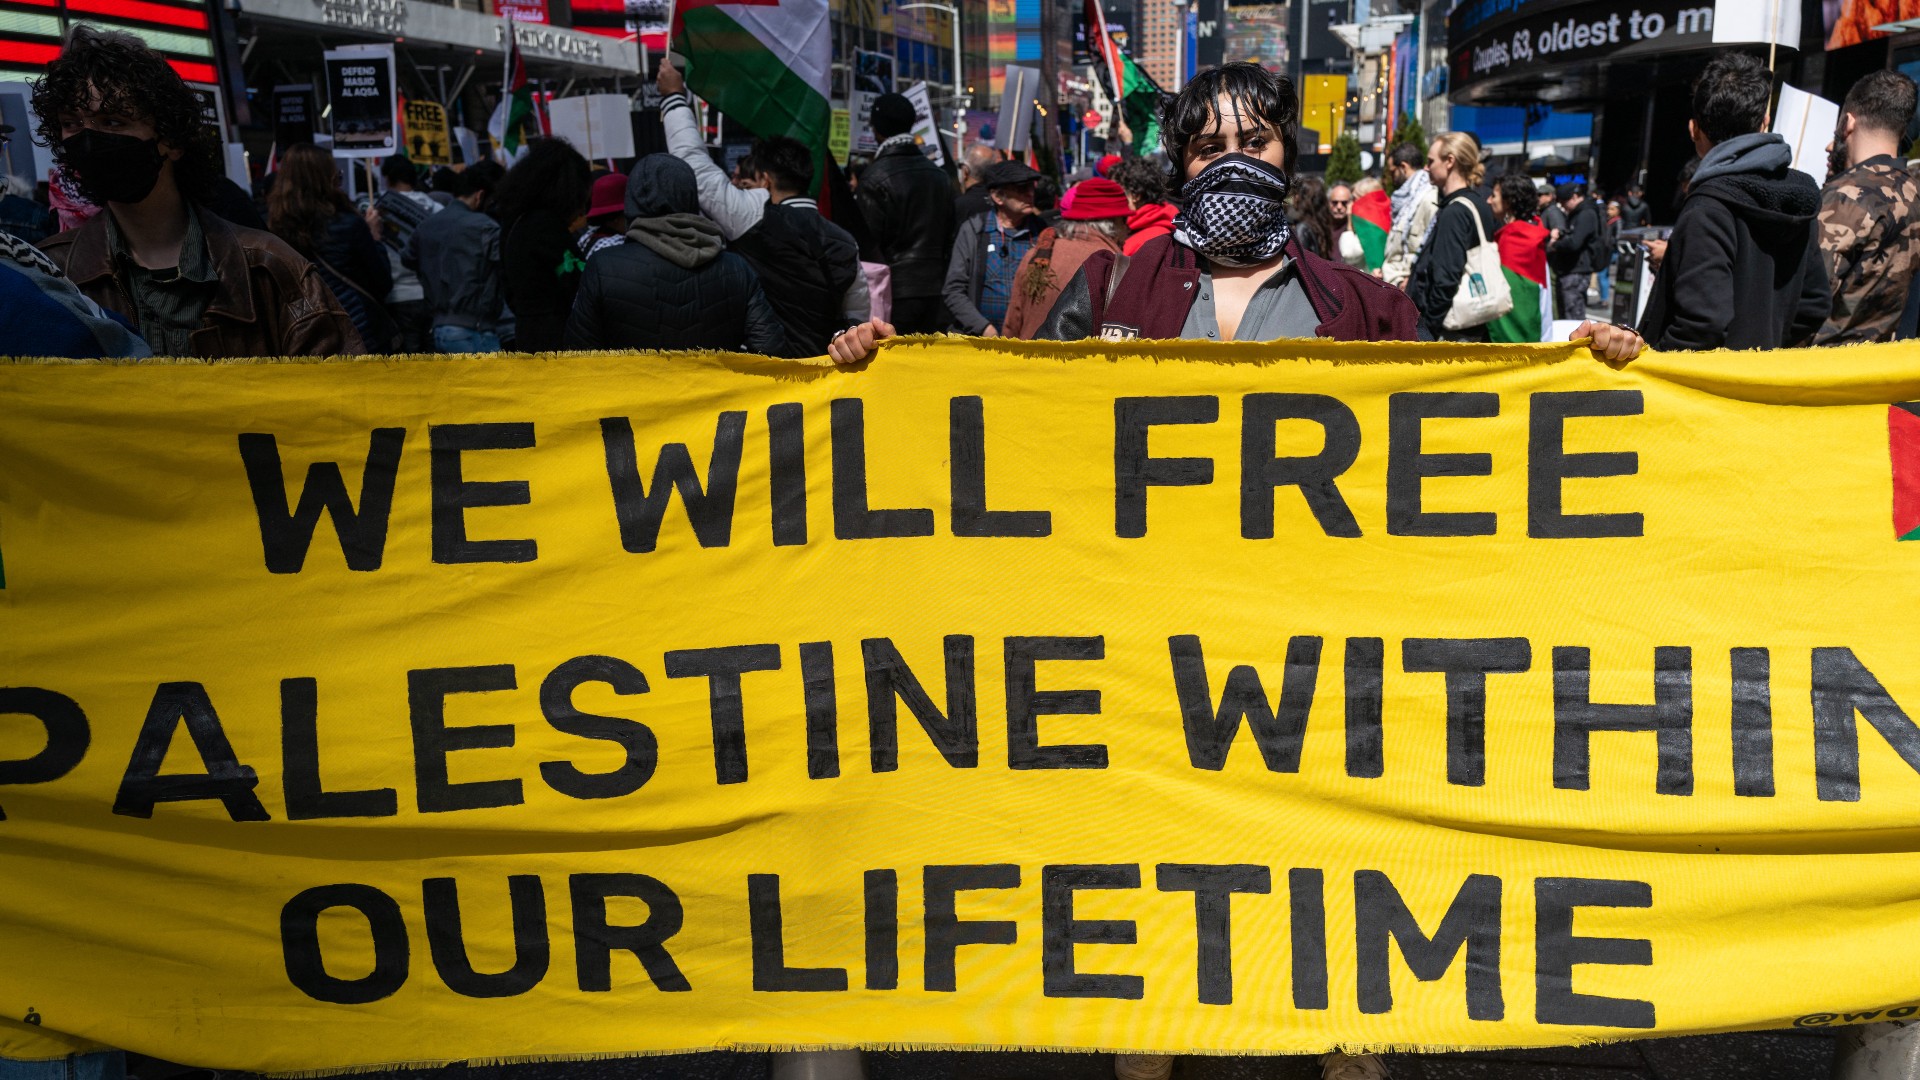 Des partisans de la cause palestinienne manifestent à Times Square, à New York, contre les récents événements entre Israël et les Palestiniens qui ont causé des pertes humaines dans les deux communautés, le 8 avril 2023 (AFP)